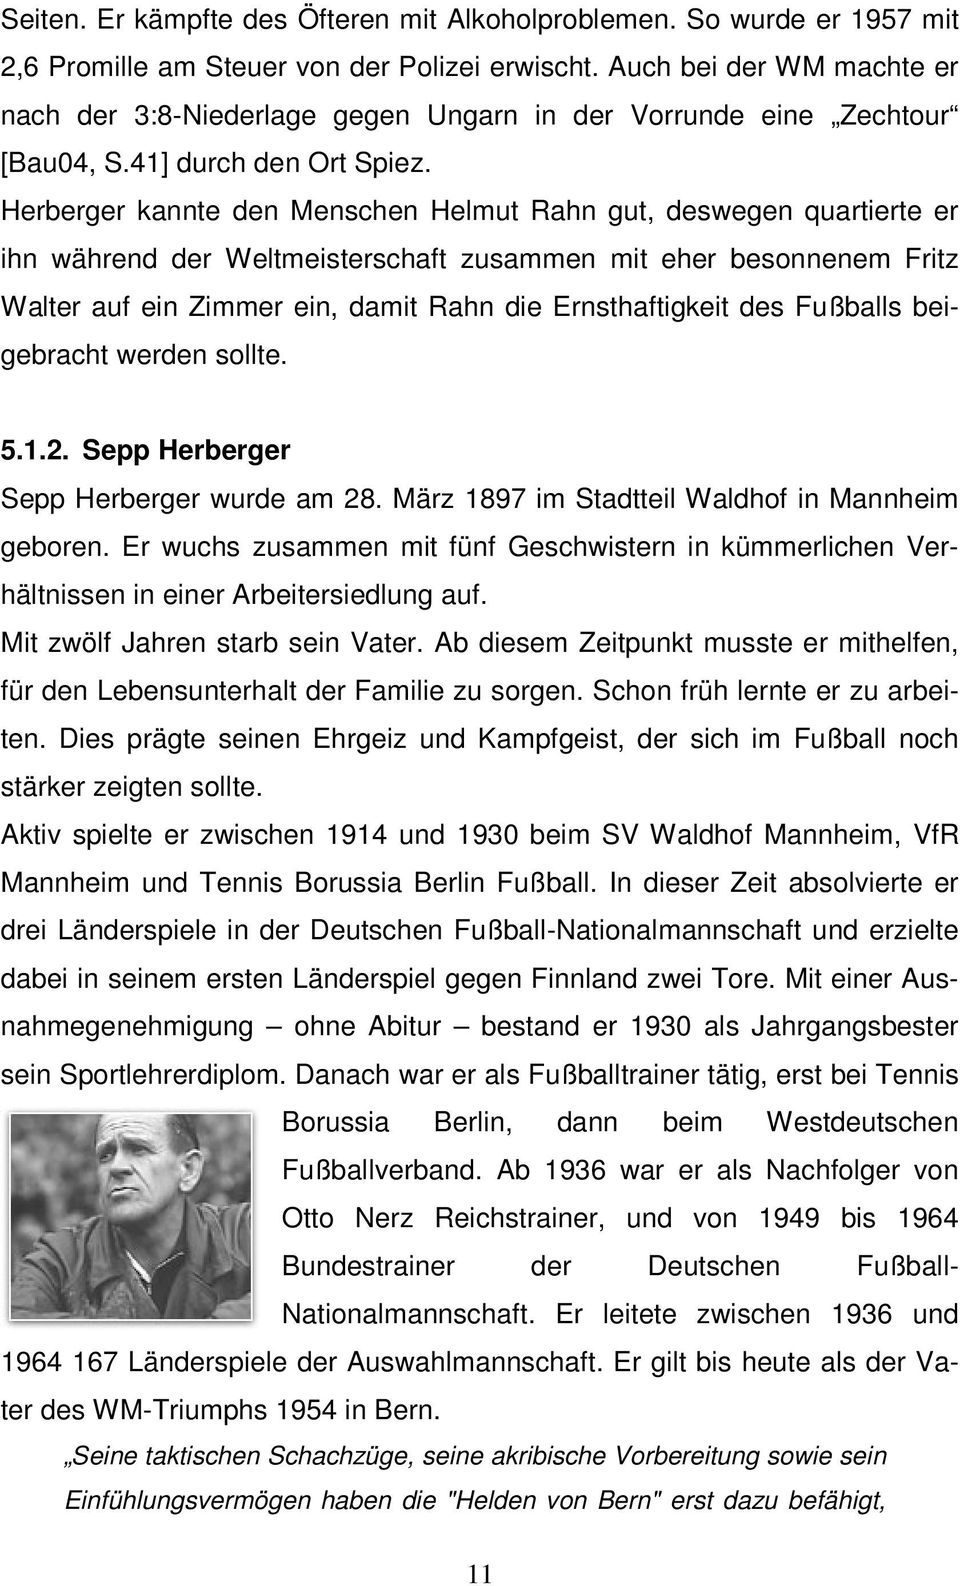 Herberger kannte den Menschen Helmut Rahn gut, deswegen quartierte er ihn während der Weltmeisterschaft zusammen mit eher besonnenem Fritz Walter auf ein Zimmer ein, damit Rahn die Ernsthaftigkeit